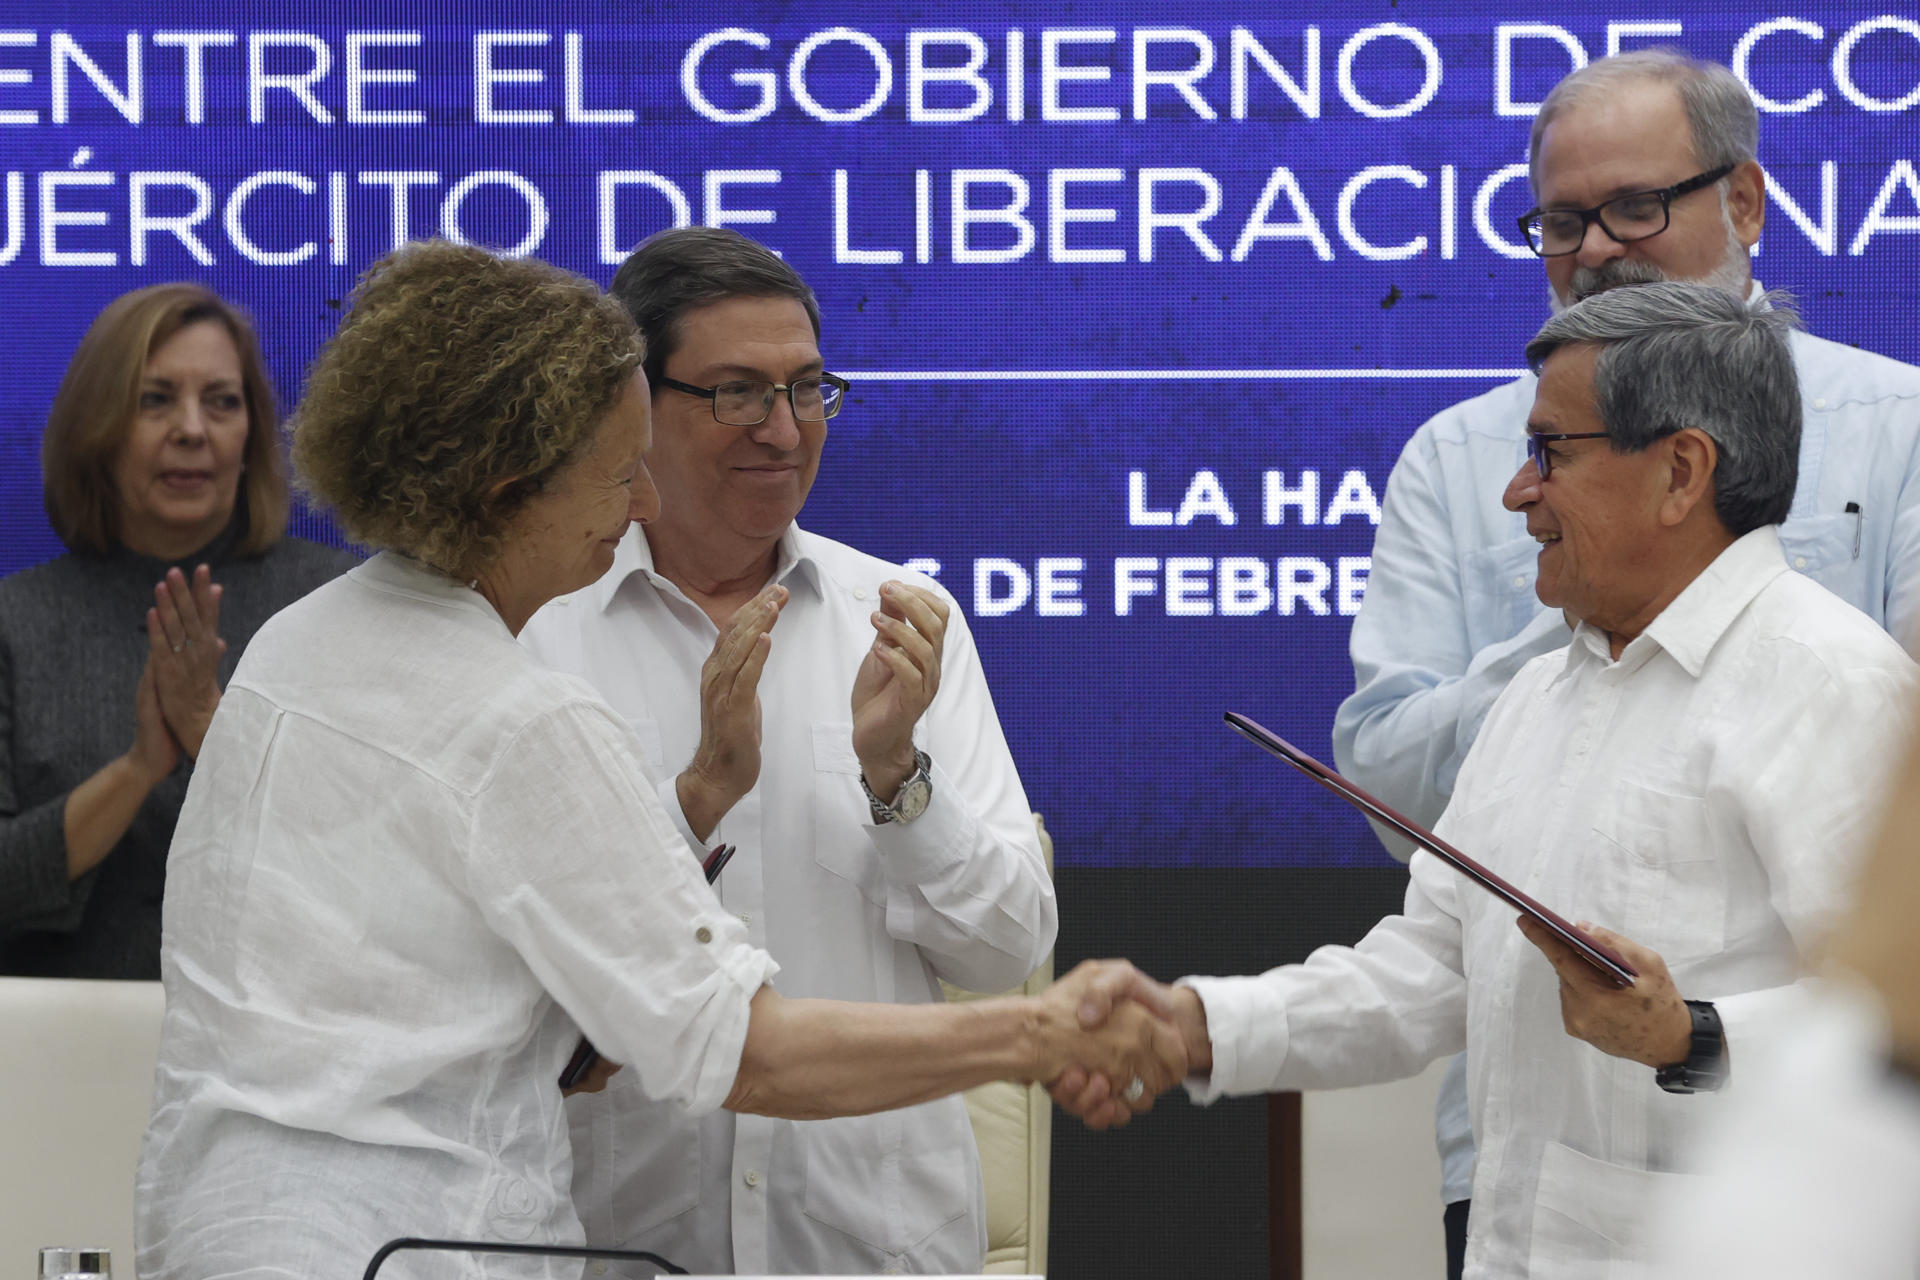 DELEGADOS. Pablo Beltrán (d), jefe negociador del ELN; Vera Grabe (i), jefa del equipo de negociación del Gobierno de Colombia. EFE/